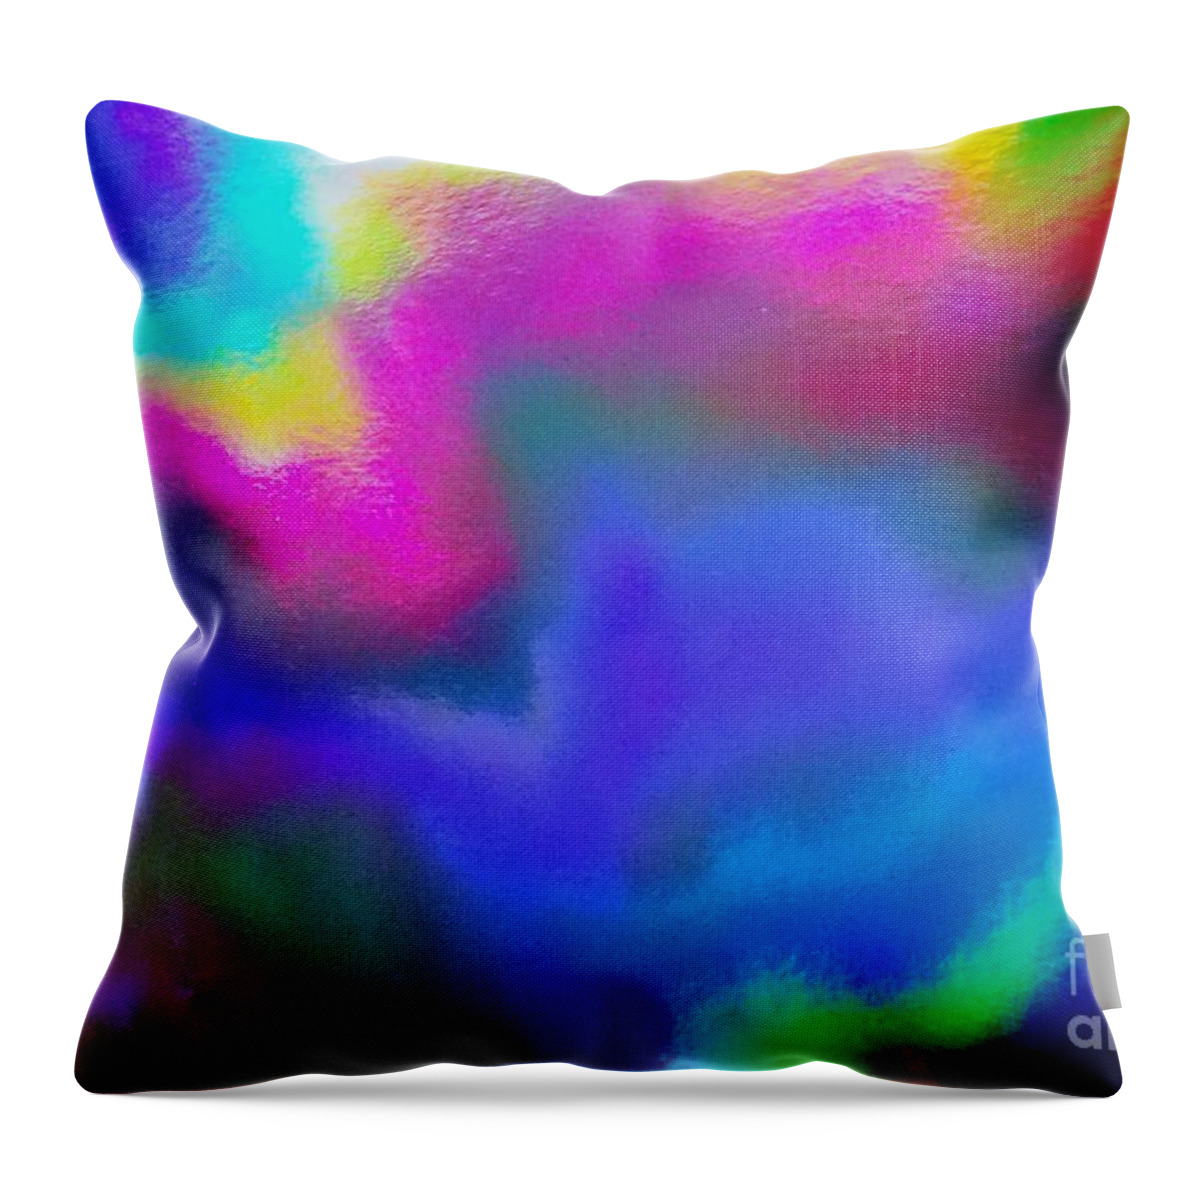 Abstract Art Throw Pillow featuring the photograph Summer Lights by Karen Jane Jones